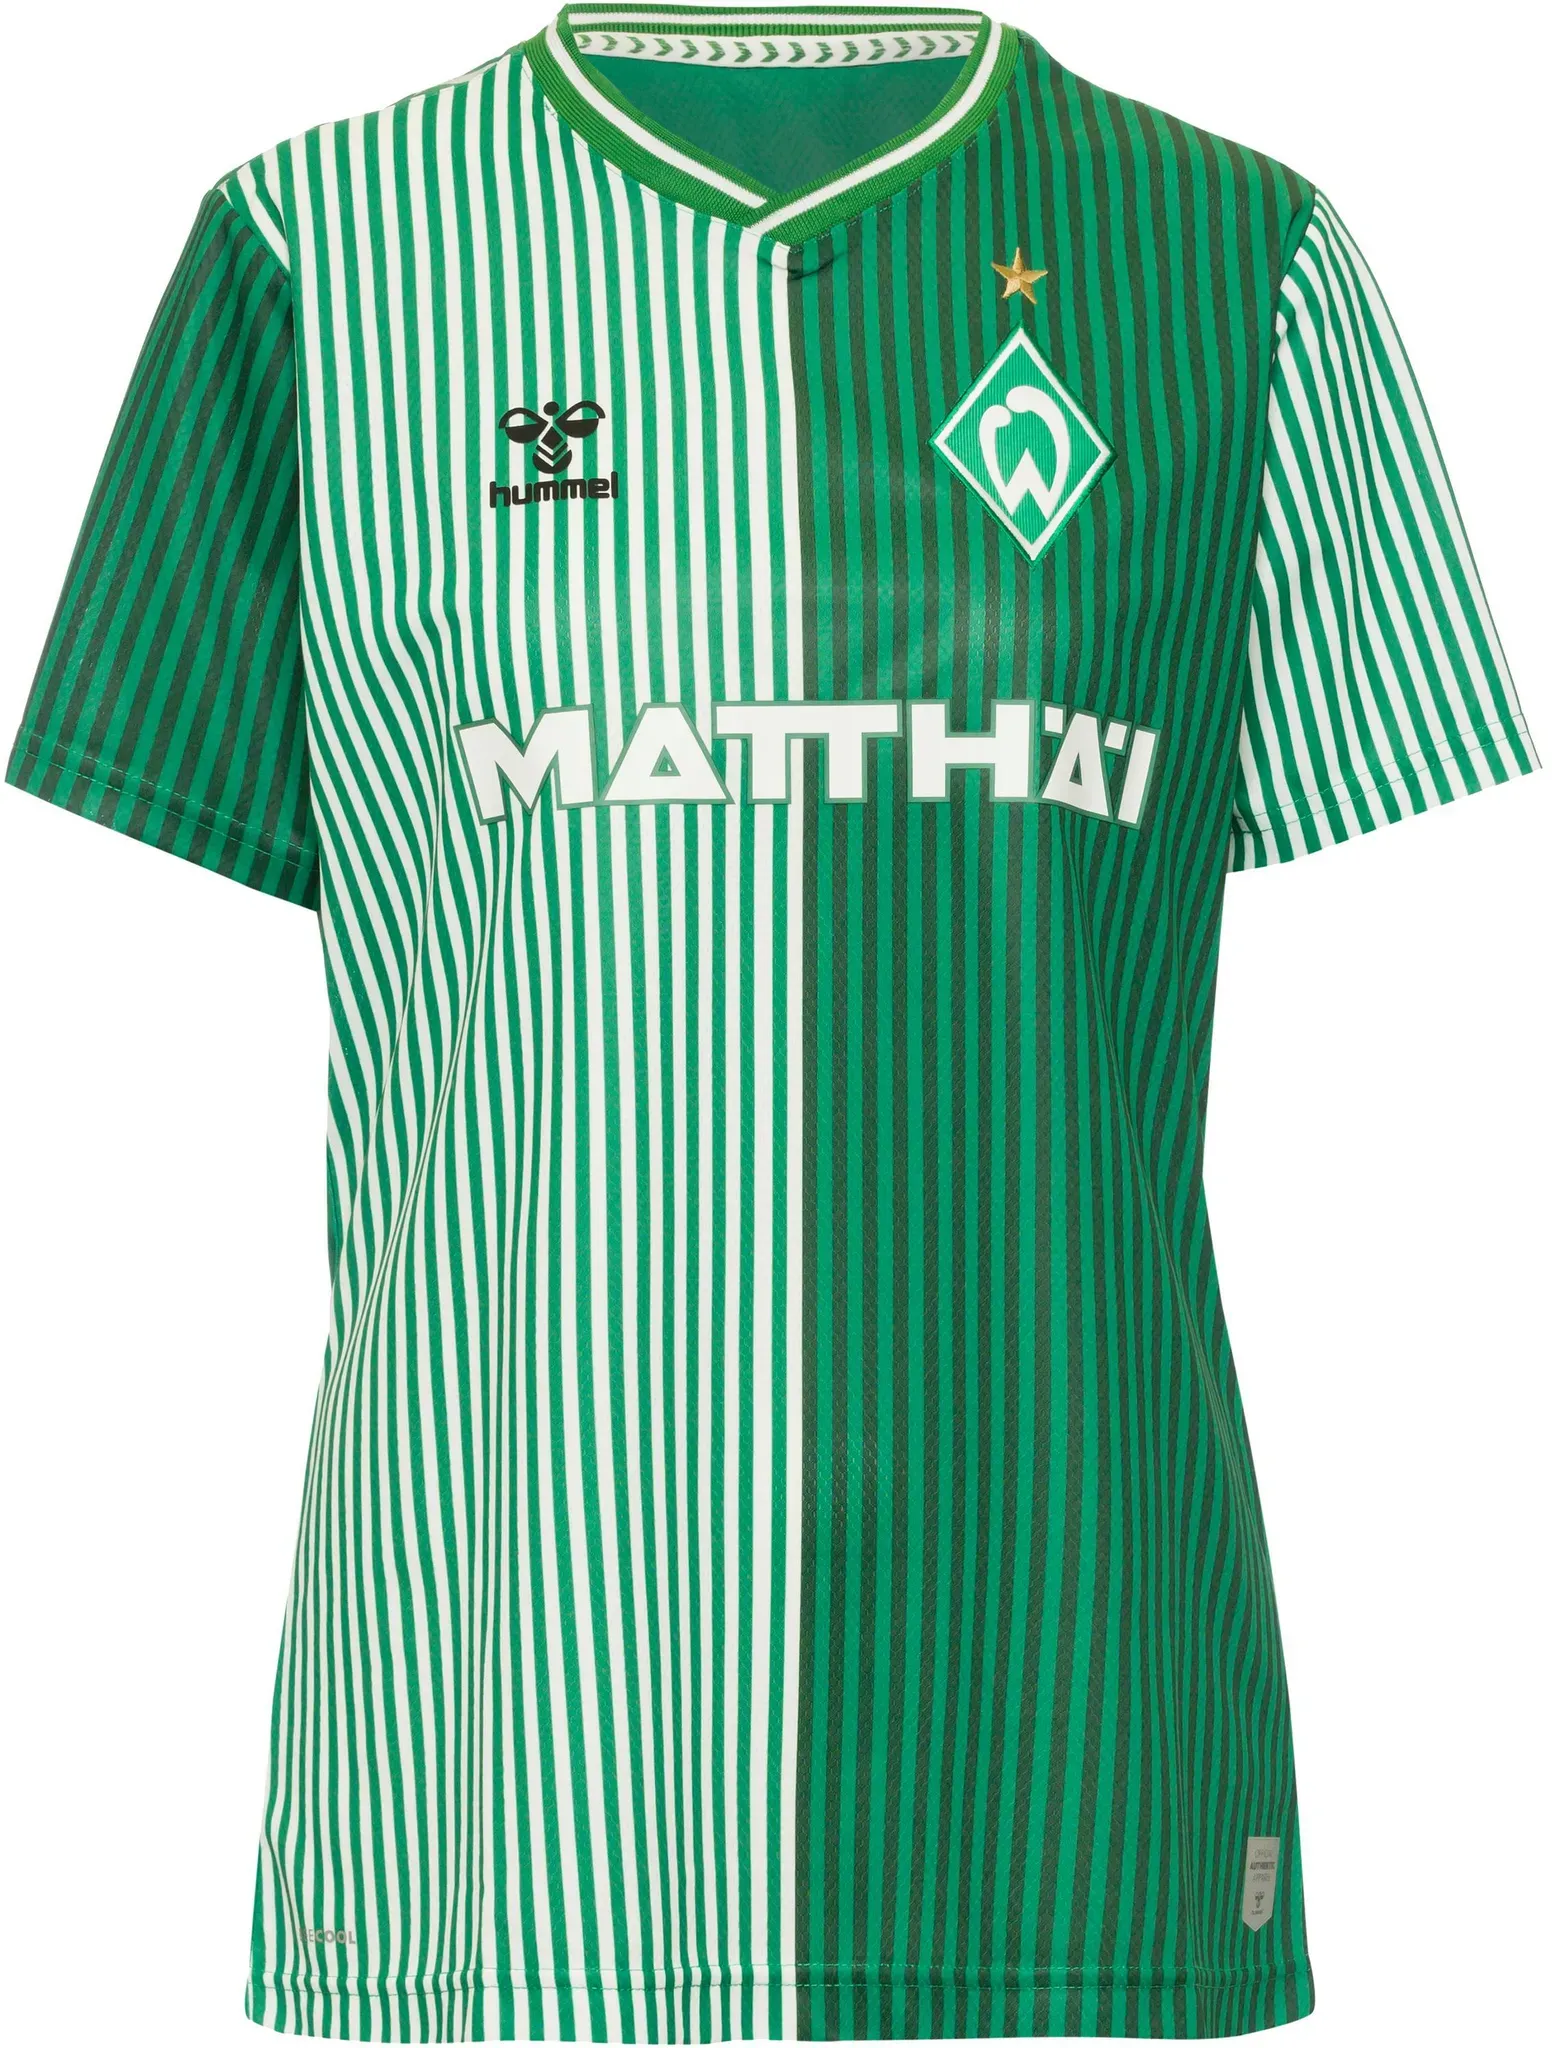 hummel Werder Bremen 23-24 Heim Teamtrikot Damen in eden, Größe XL - grün